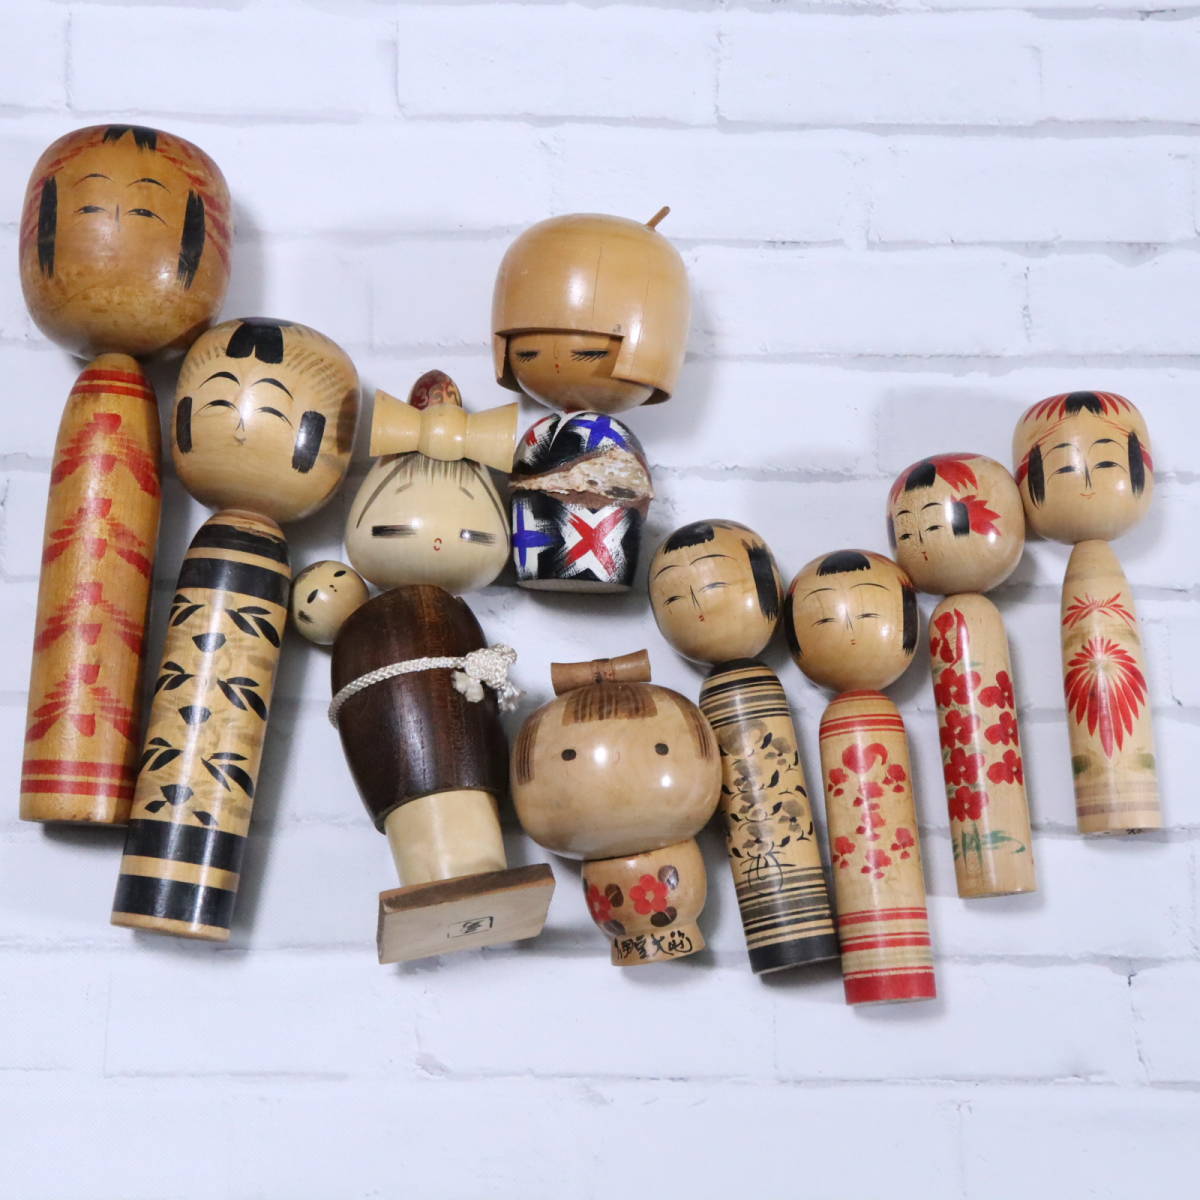 【現状品】こけし 9点セット コレクター 9.6～24cm 伝統工芸 日本人形 民芸品 郷土玩具 オブジェ 中古